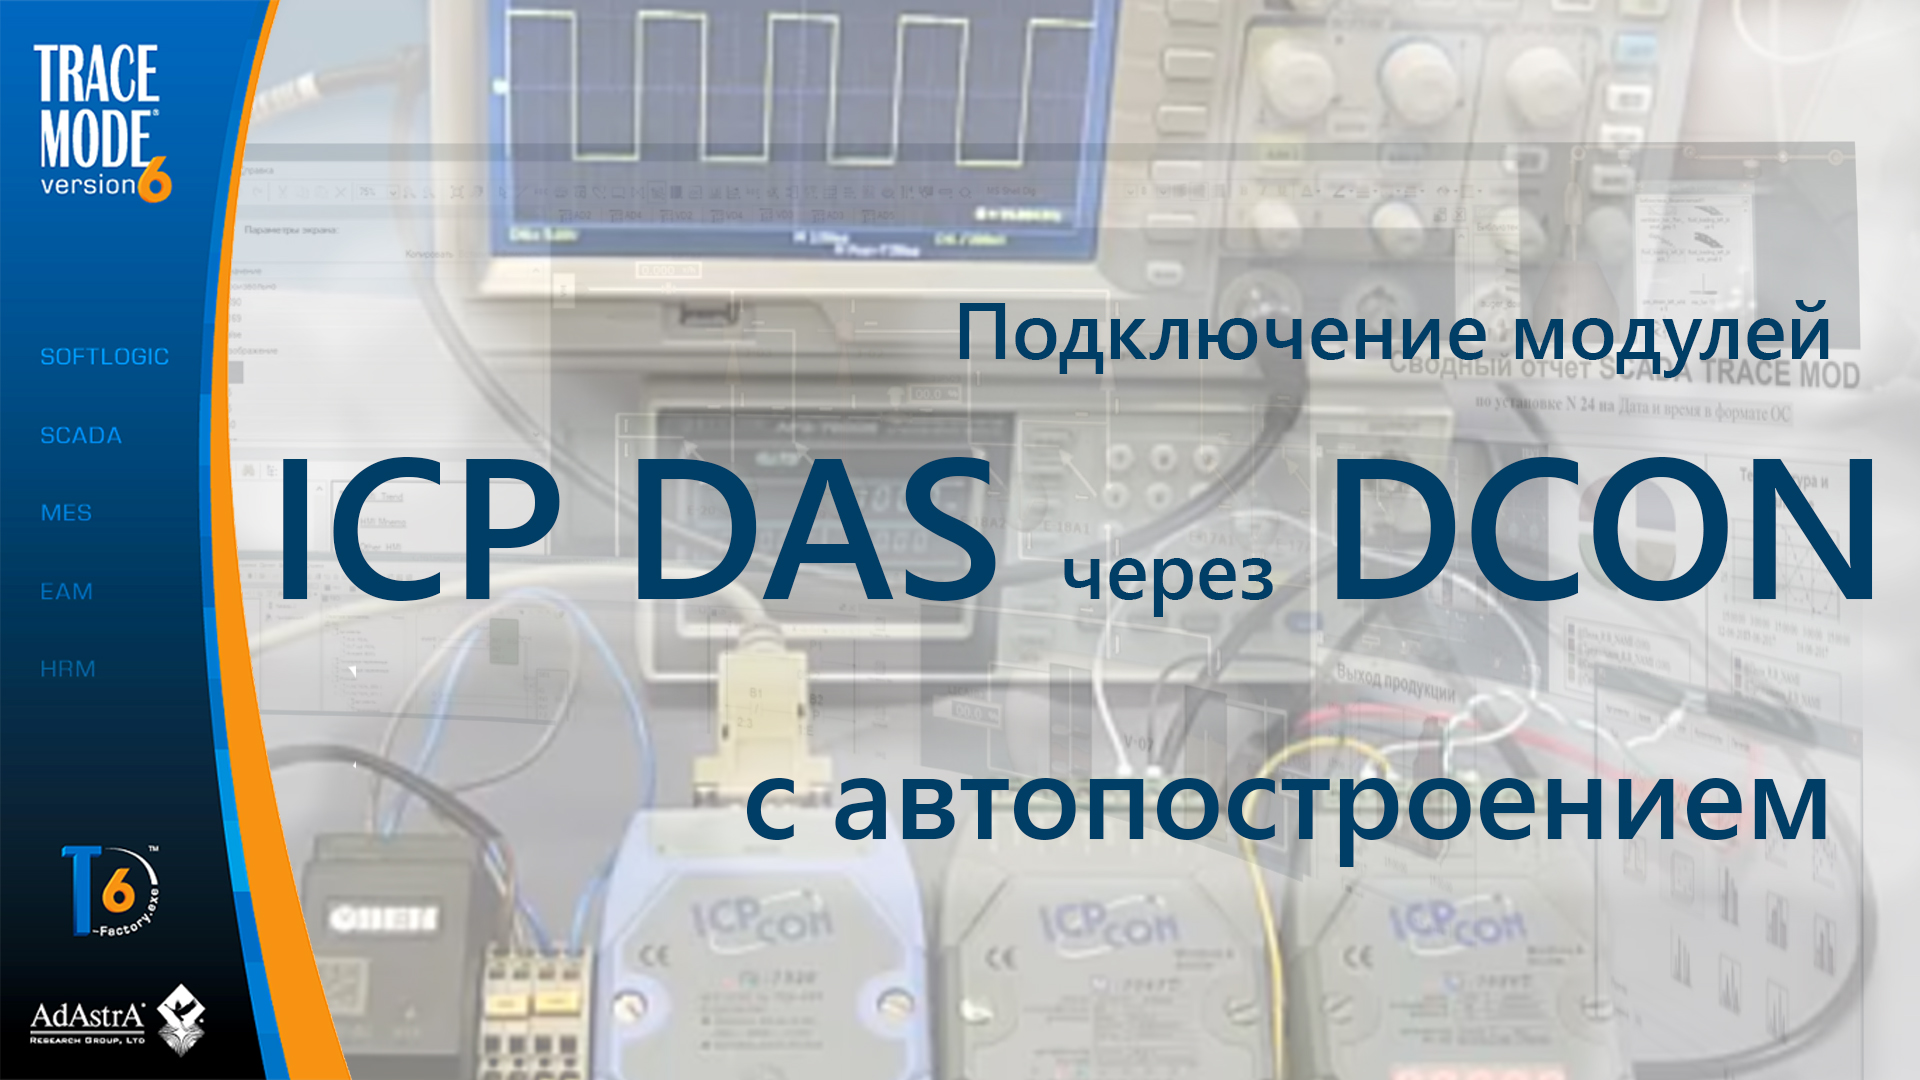 Подключение модулей ICP DAS по протоколу DCON c автопостроением